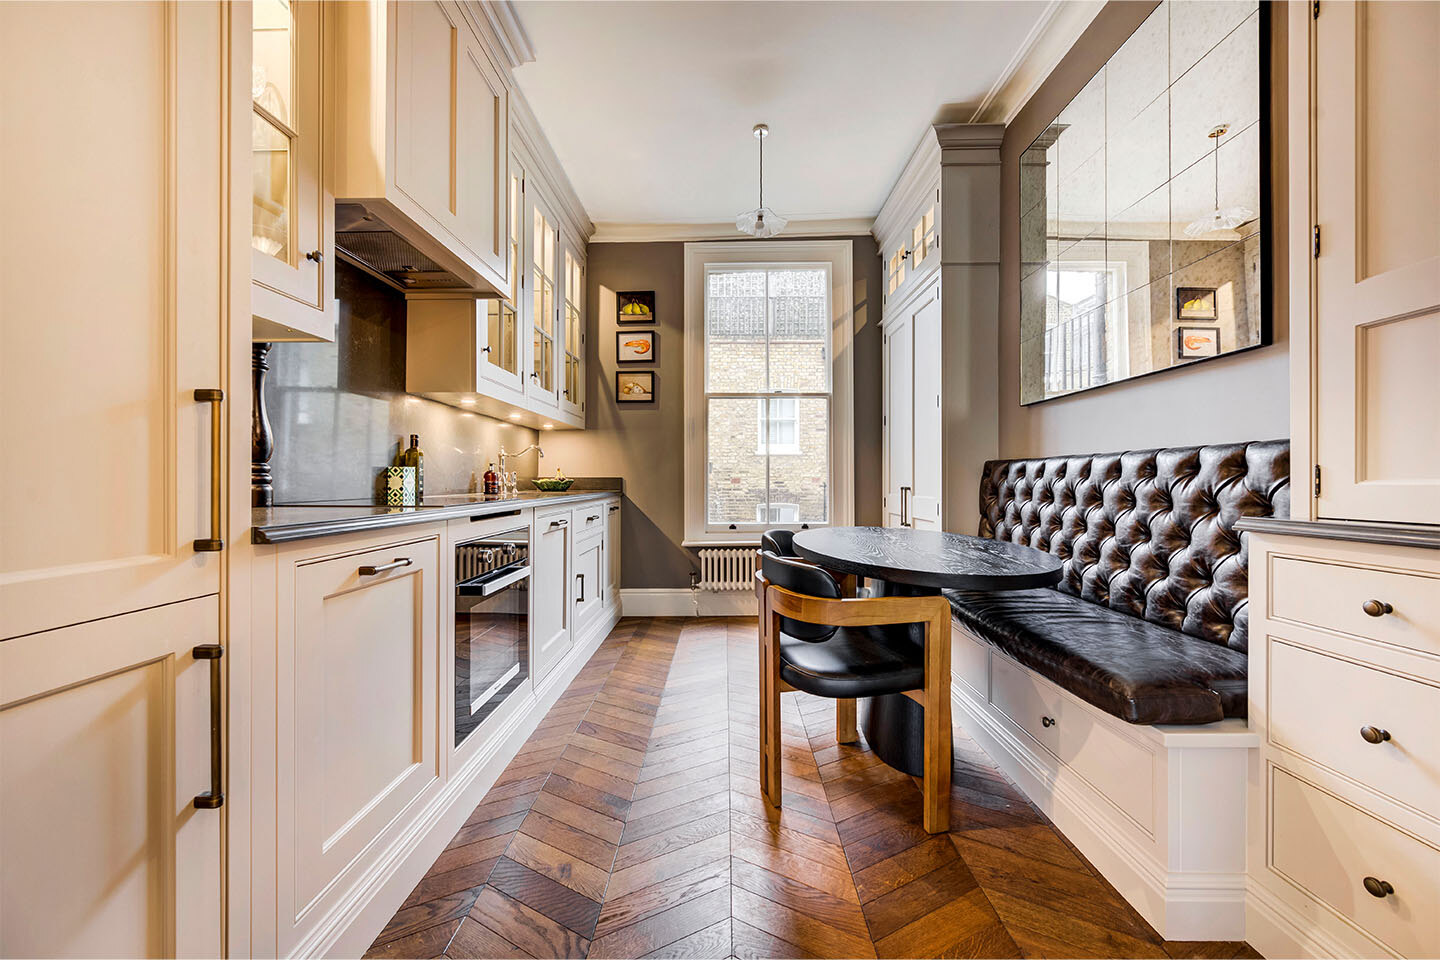 Mimi Bouchard's Caesarstone galley kitchen with Piatra Grey worktops